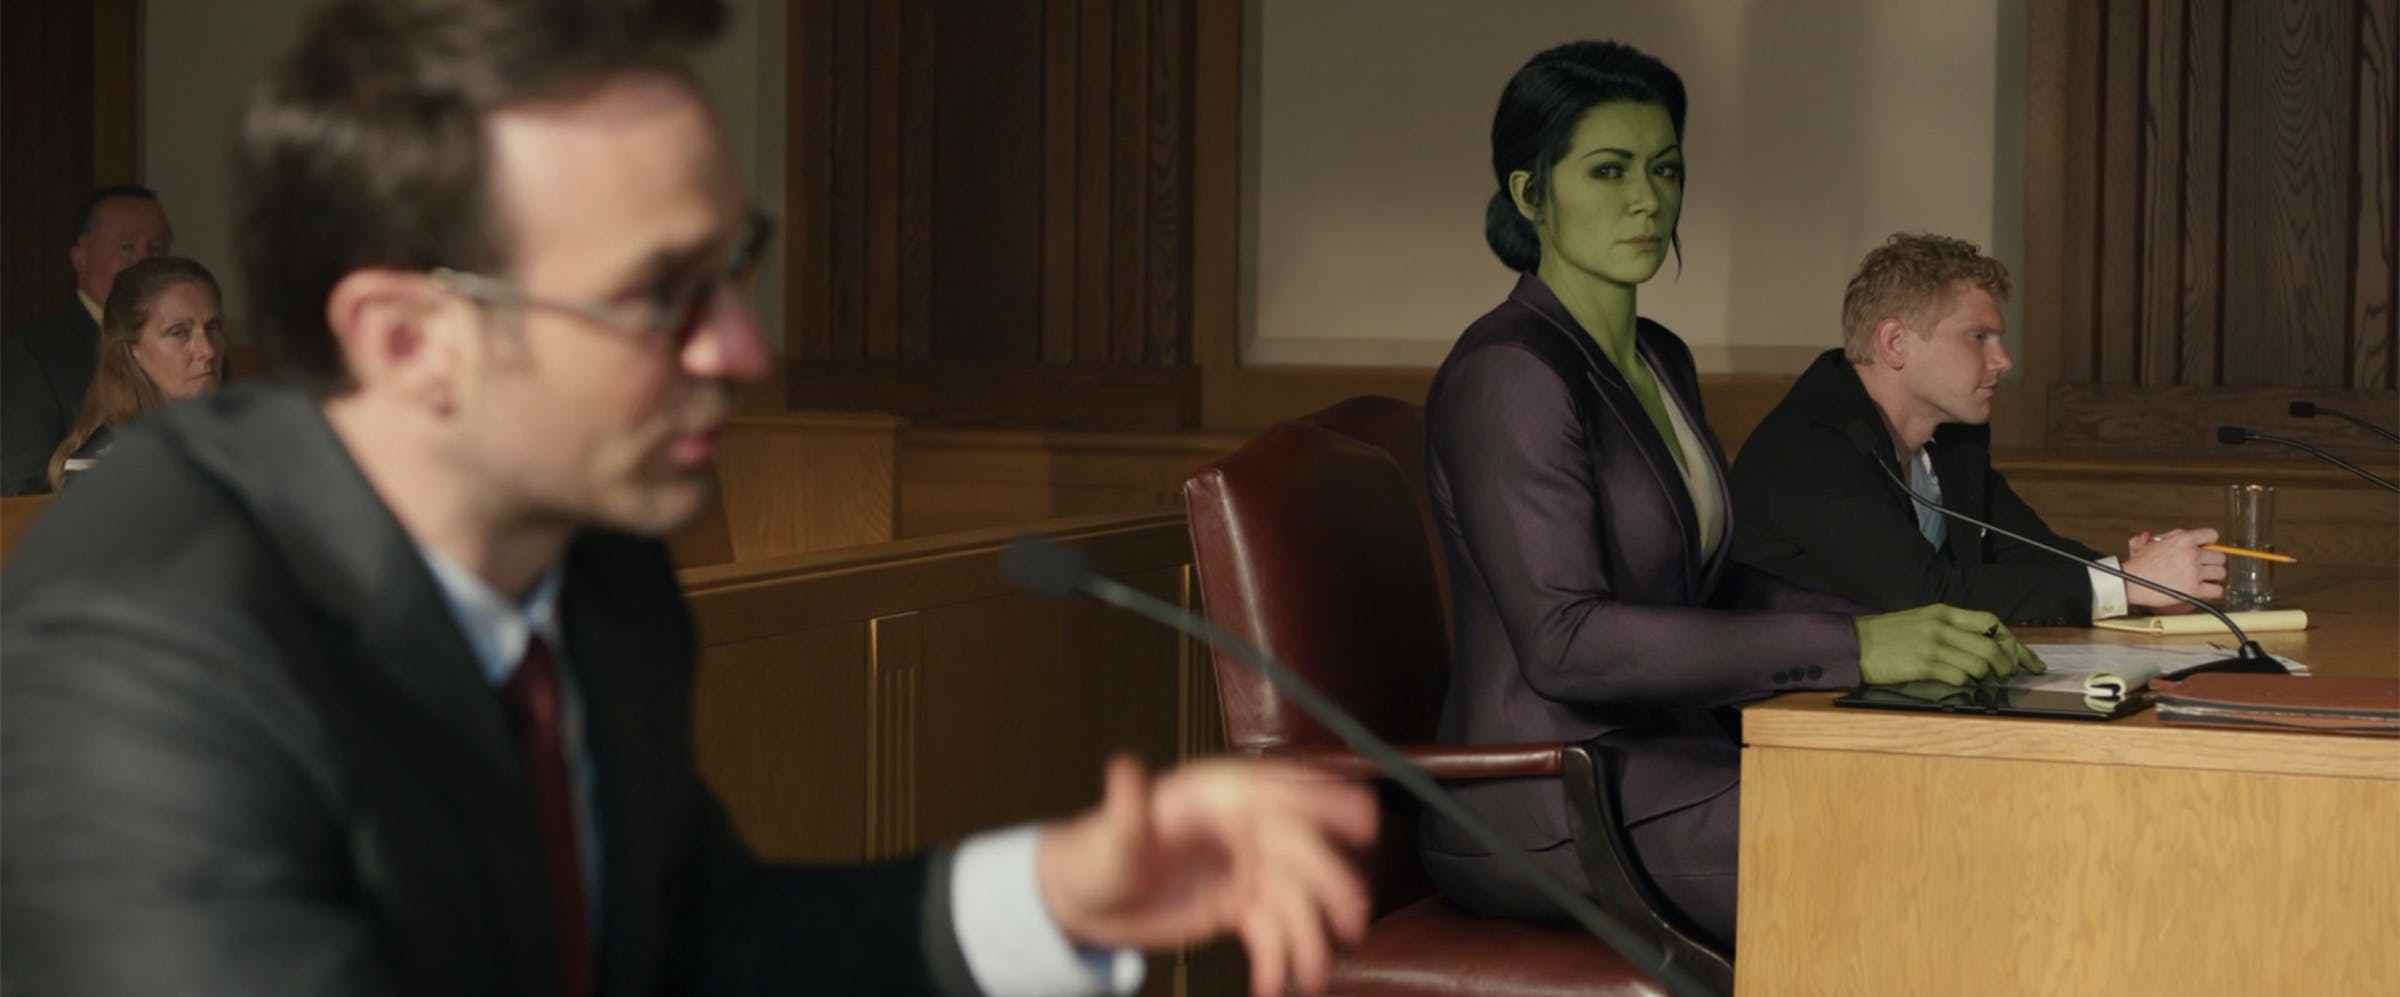 Mahkeme salonunun önünde müvekkilinin yanında oturan mor takım elbiseli yeşil bir kadın, takım elbiseli sarışın bir adam eğildi.  Kadın başka bir avukata bakıyor, kırmızı gözlük takan bir adam.